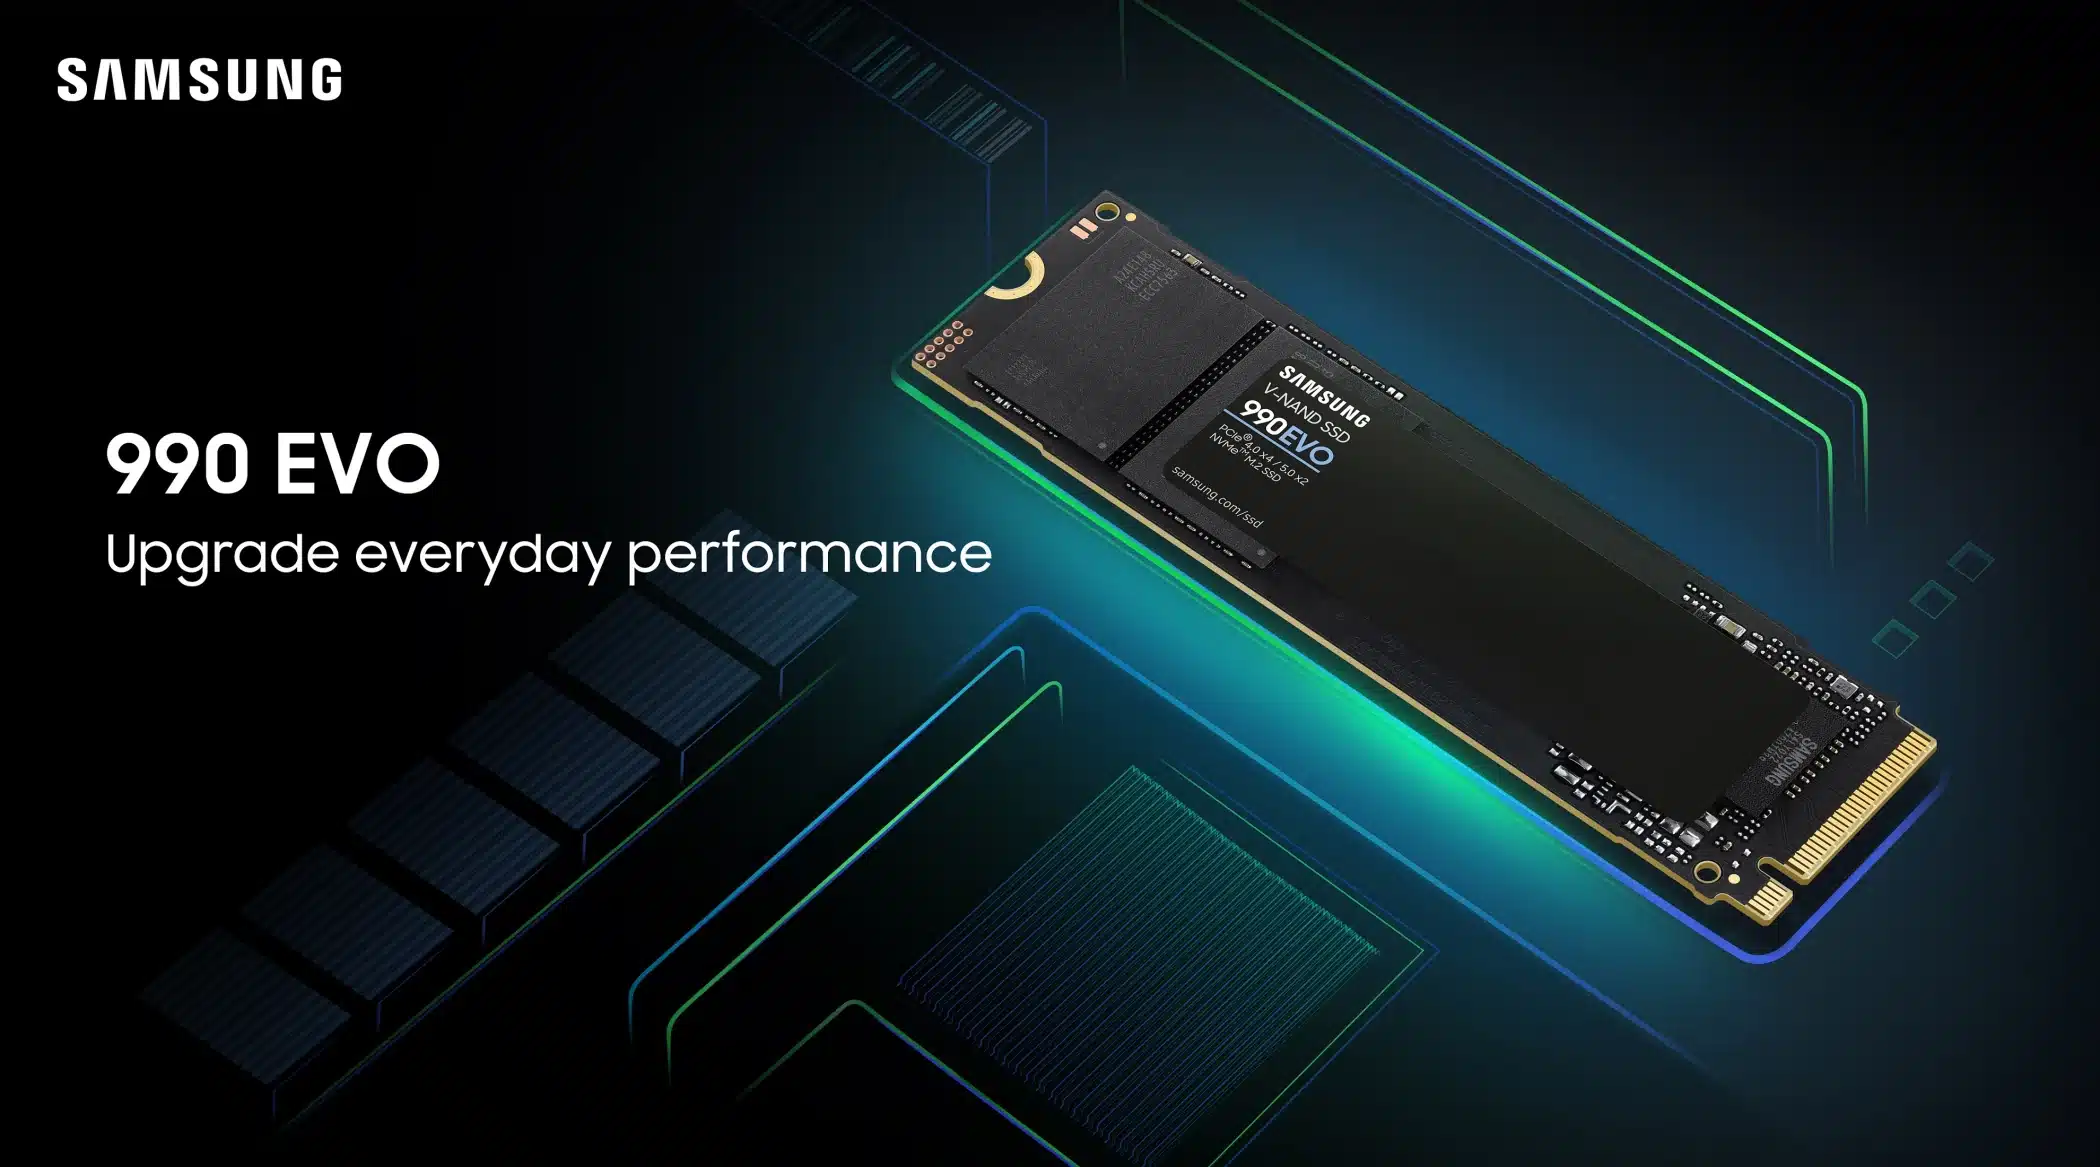 Samsung、世界初のハイブリッドPCIe対応SSD「990 EVO」を発売